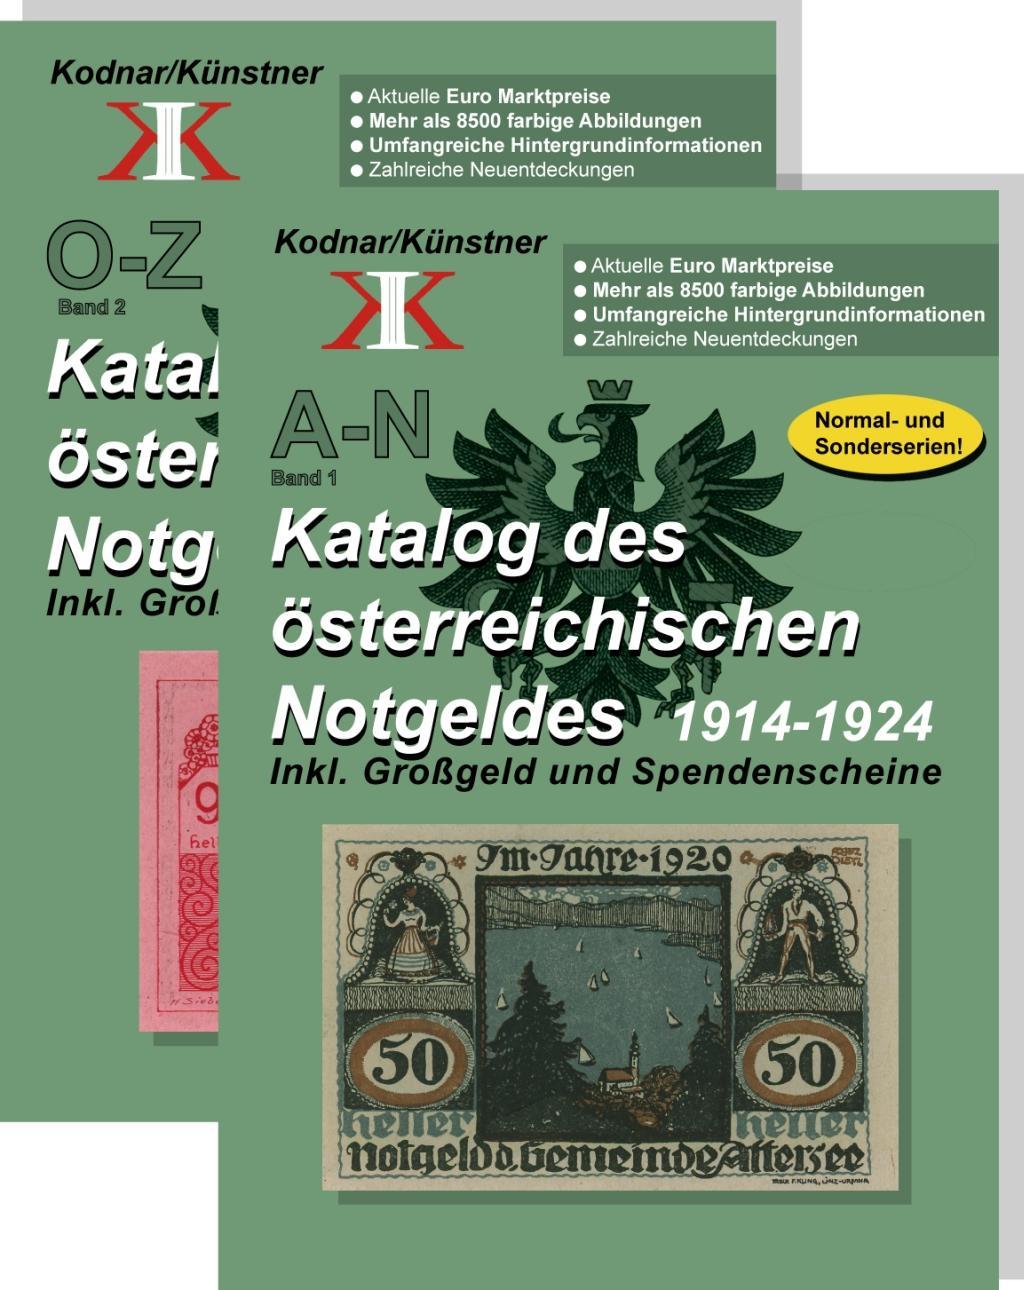 Knjiga Katalog des österreichischen Notgeldes 1914-1924 in 2 Bänden Johann Kodnar